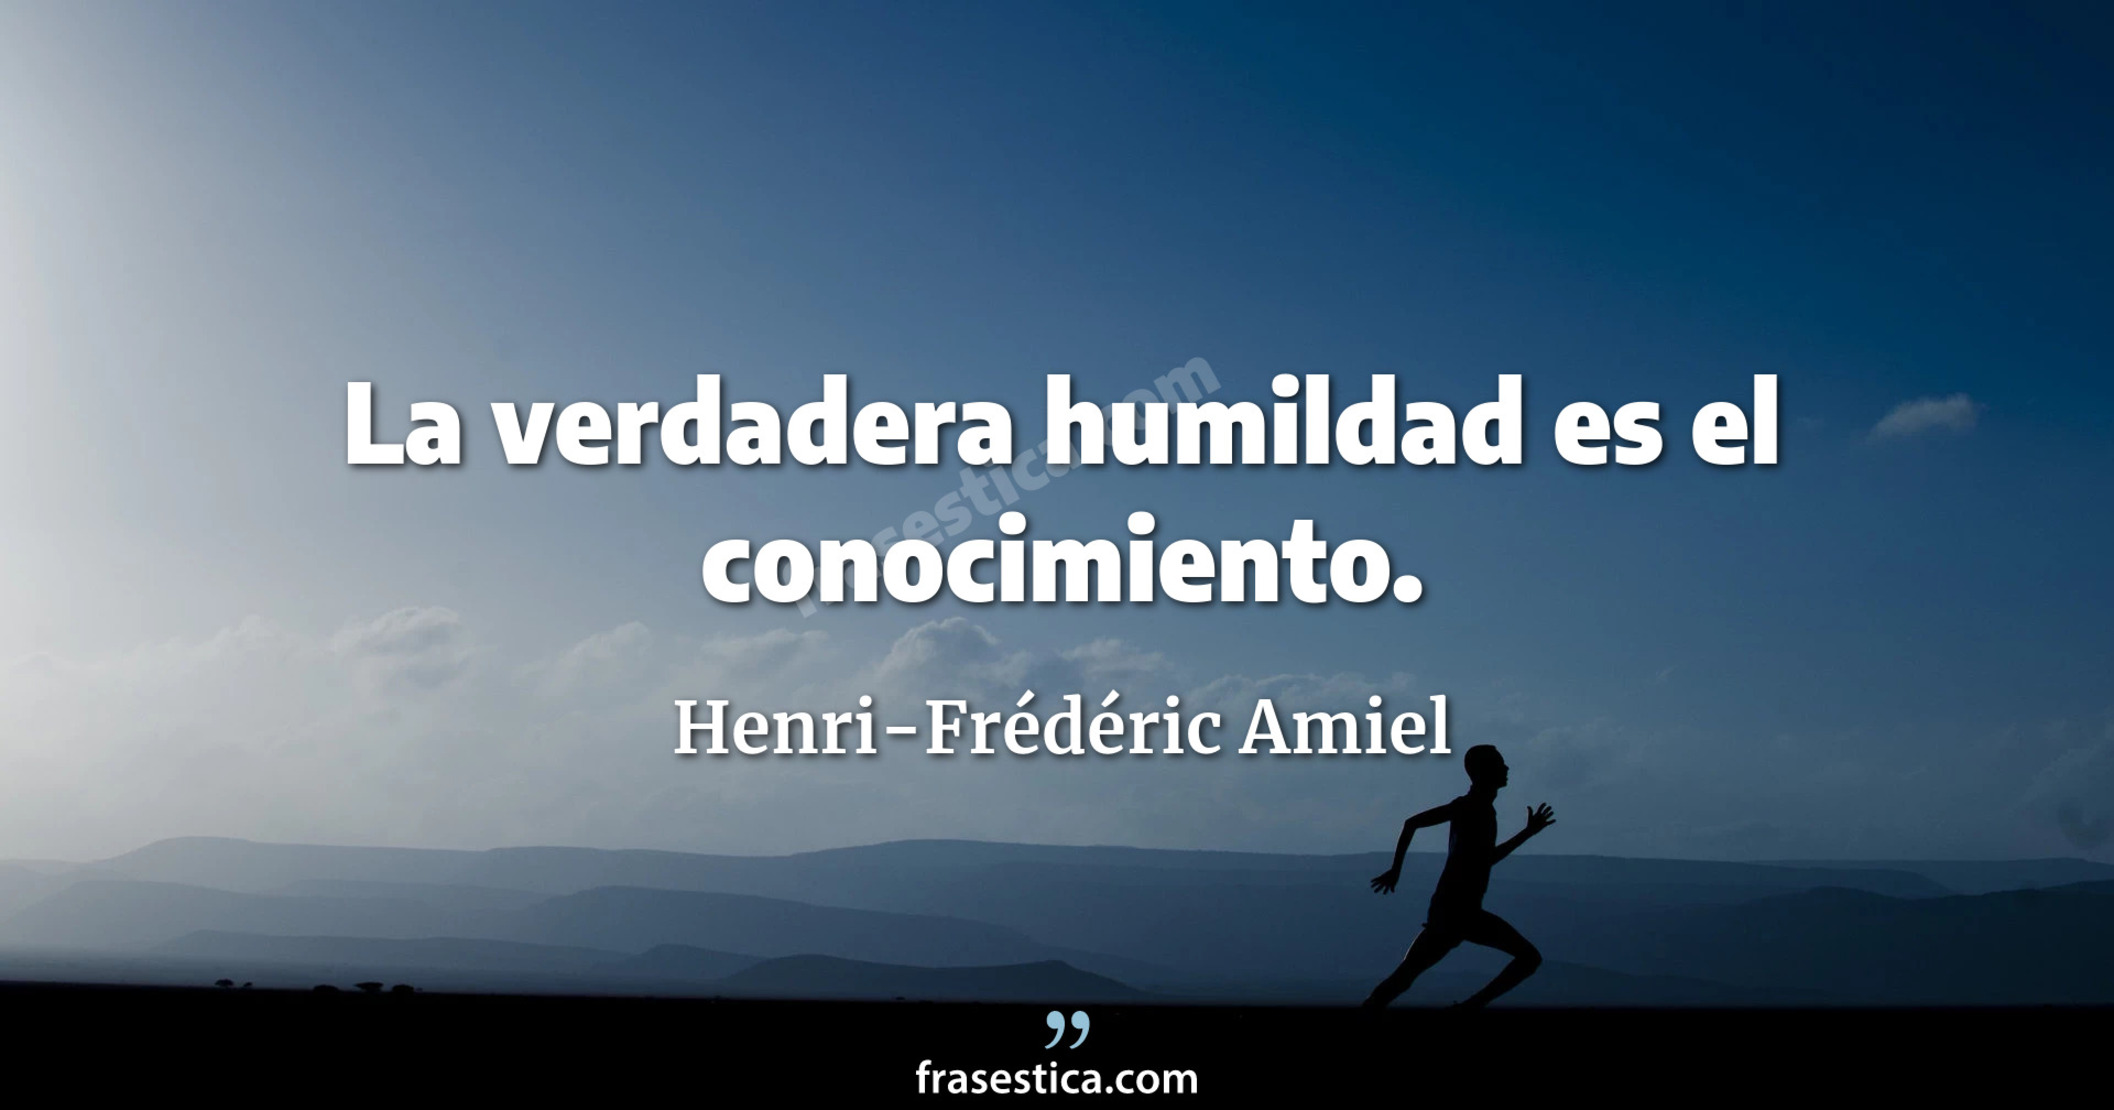 La verdadera humildad es el conocimiento. - Henri-Frédéric Amiel